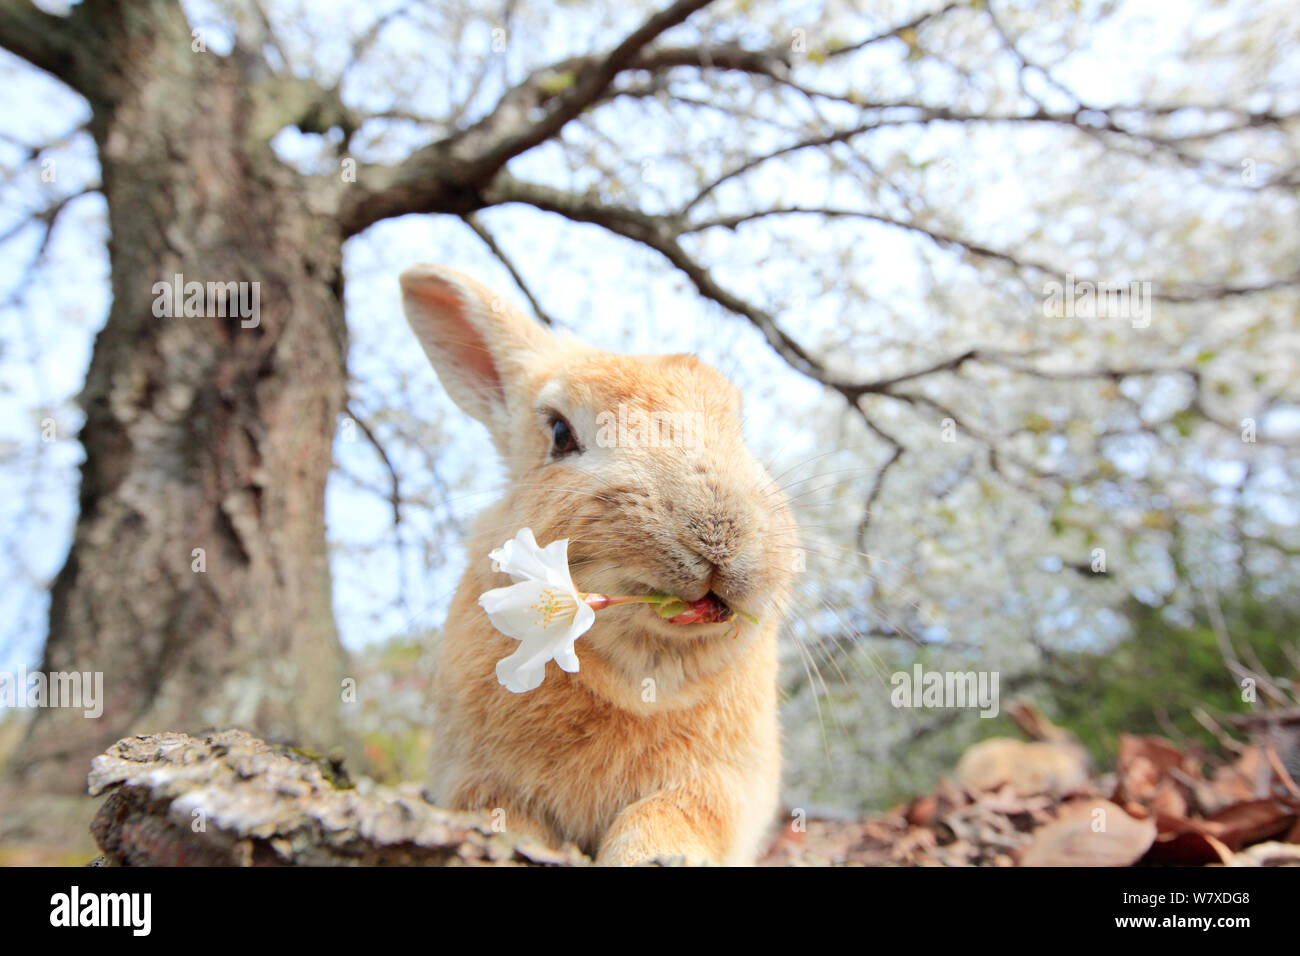 Les sauvages lapin (Oryctolagus cuniculus) se nourrissant de fleur de cerisier, Okunojima Island, également connu sous le nom de Rabbit Island, Hiroshima, Japon. Banque D'Images